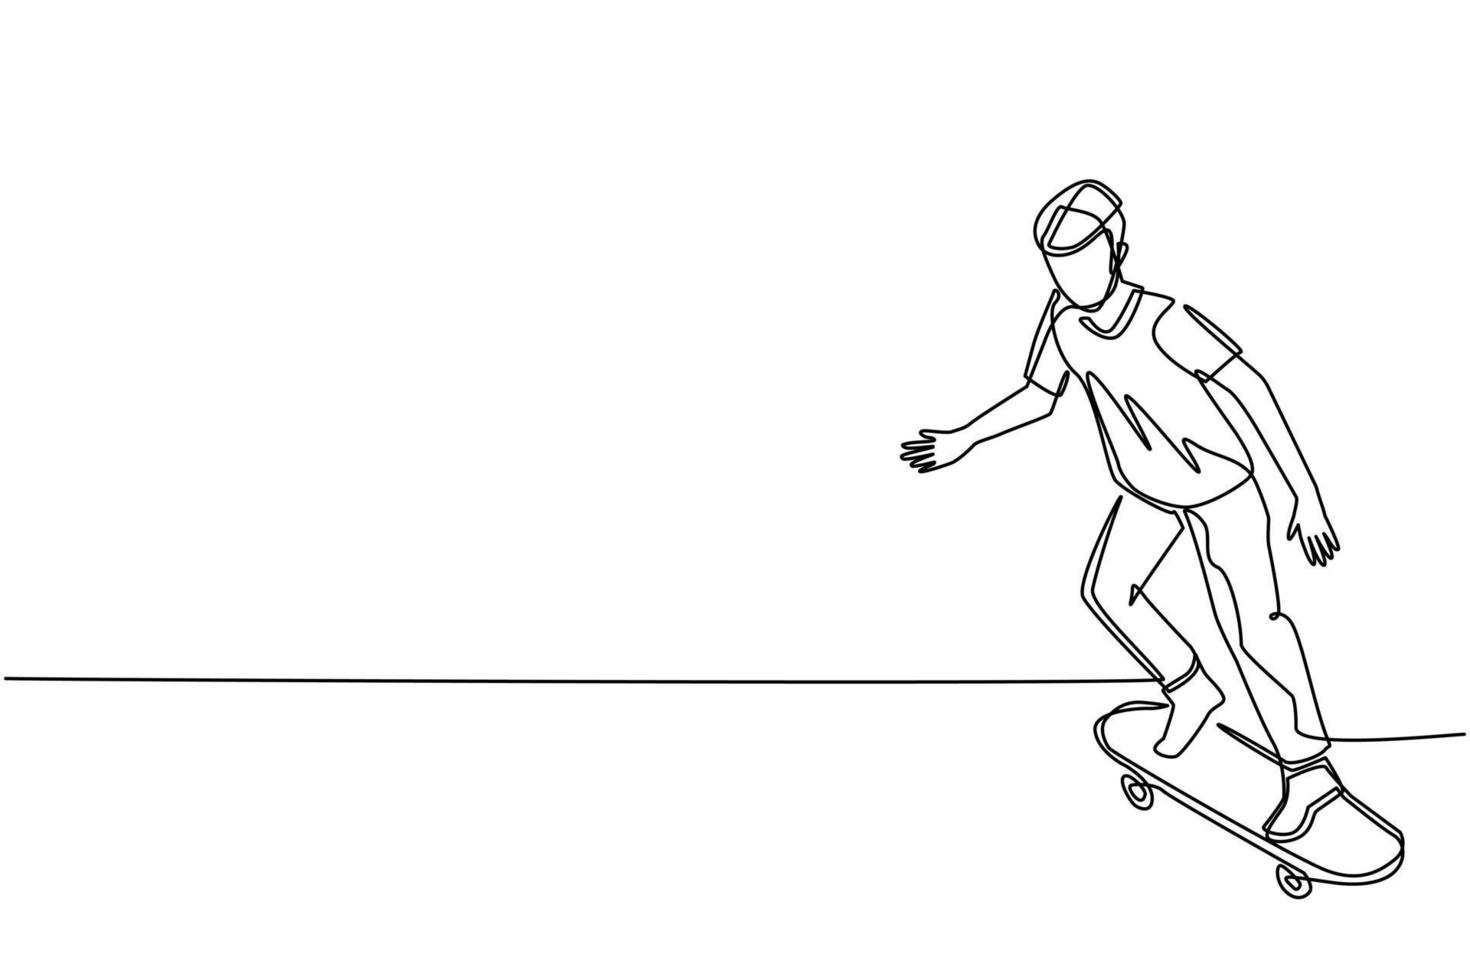 einzelne eine Strichzeichnung junger Mann, der Skateboard fährt. stylischer männlicher skater im lässigen outfit. Typ bewegt sich in der Stadt, Outdoor-Aktivitäten, genießt Hobbys. ununterbrochene Linie zeichnen Design-Vektor-Illustration vektor